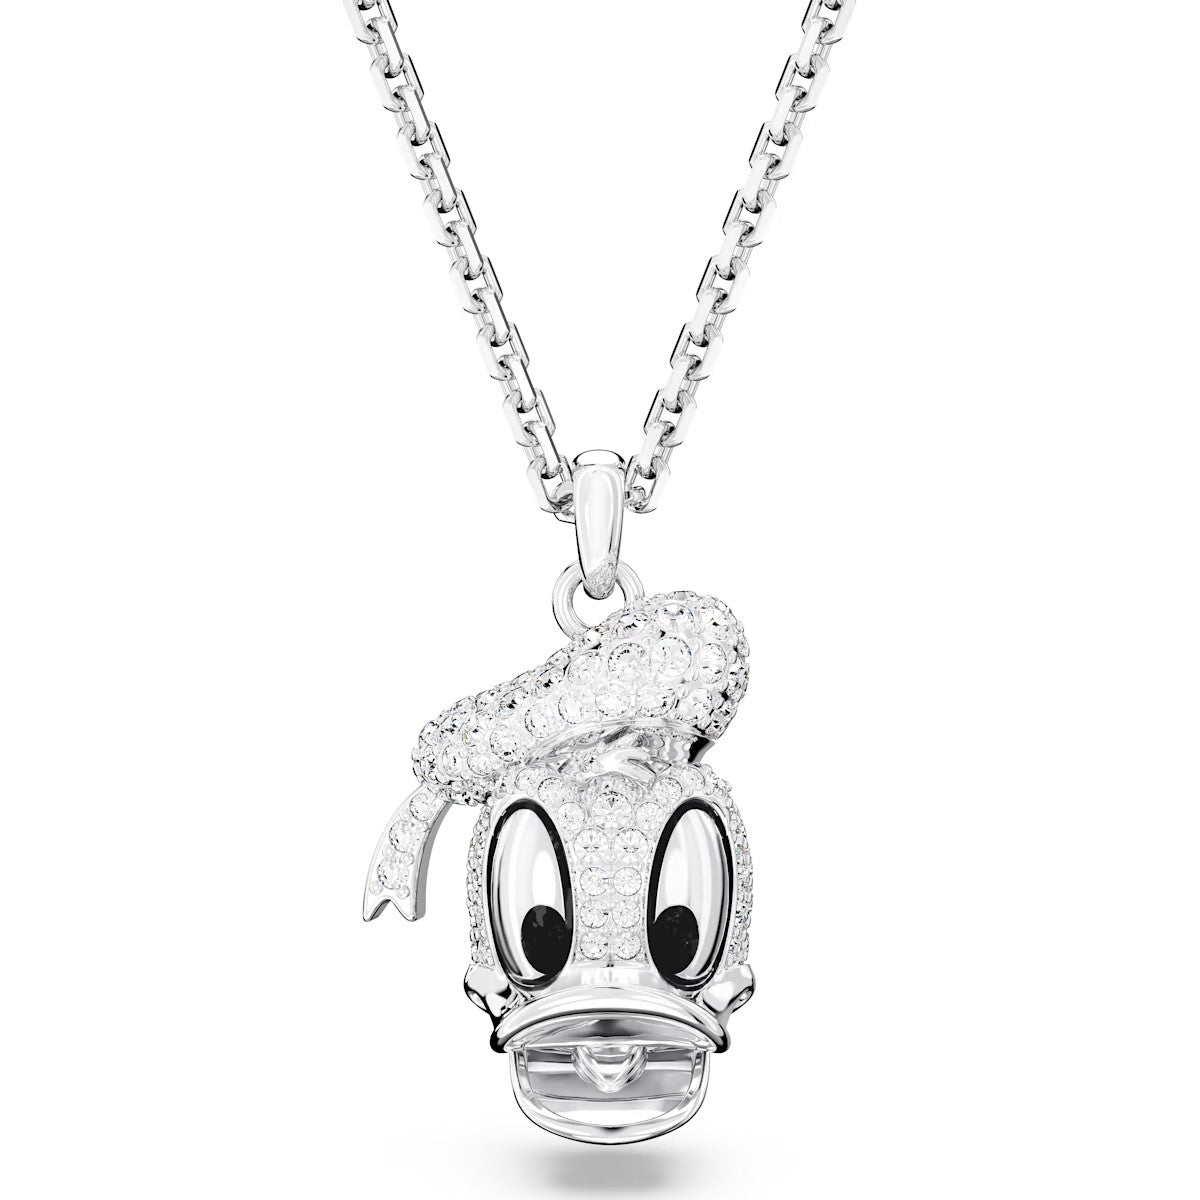 Swarovski Disney 100 - Colgante Pato Donald, blanco, Baño de rodio - 5668775 